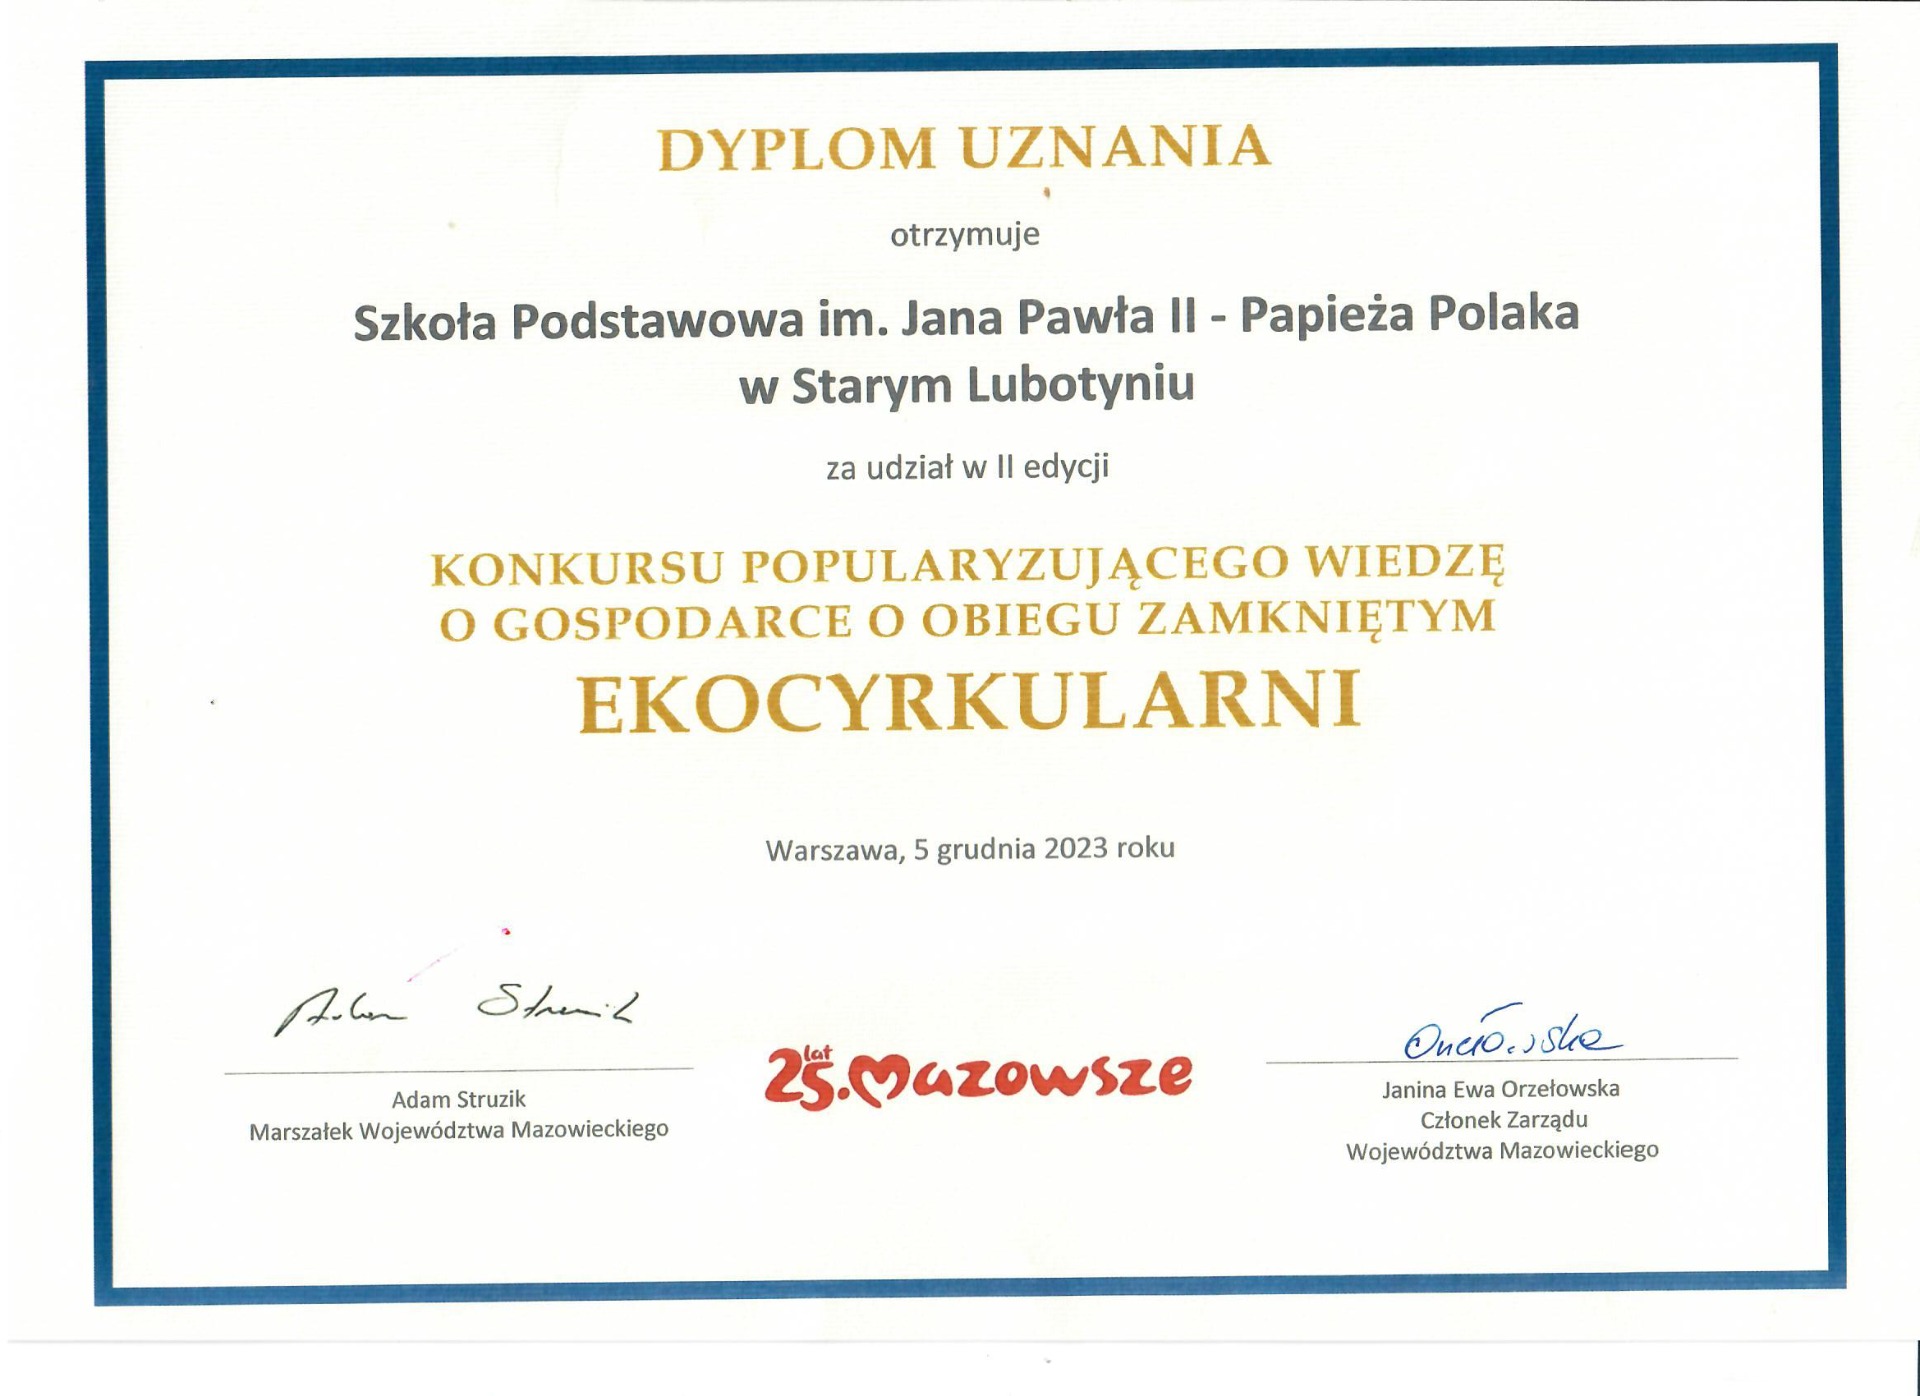 Dyplom za udział w konkursie "Ekocyrkularni"